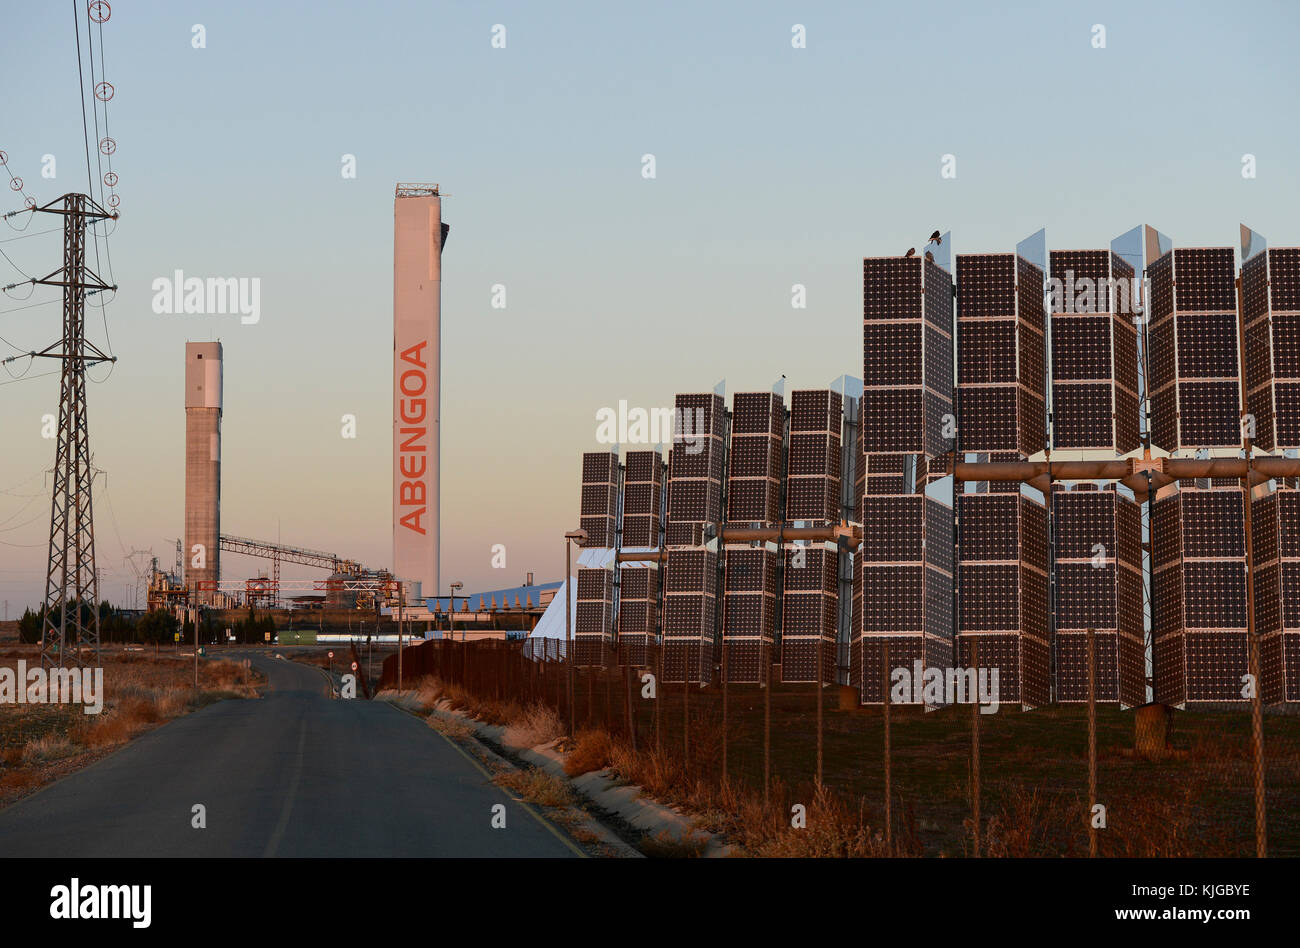 Spagna, Siviglia, Sanlucar la Mayor, Solnova solar power station con piatto heliostats e torre PS10 e PS20 dalla società Abengoa Foto Stock